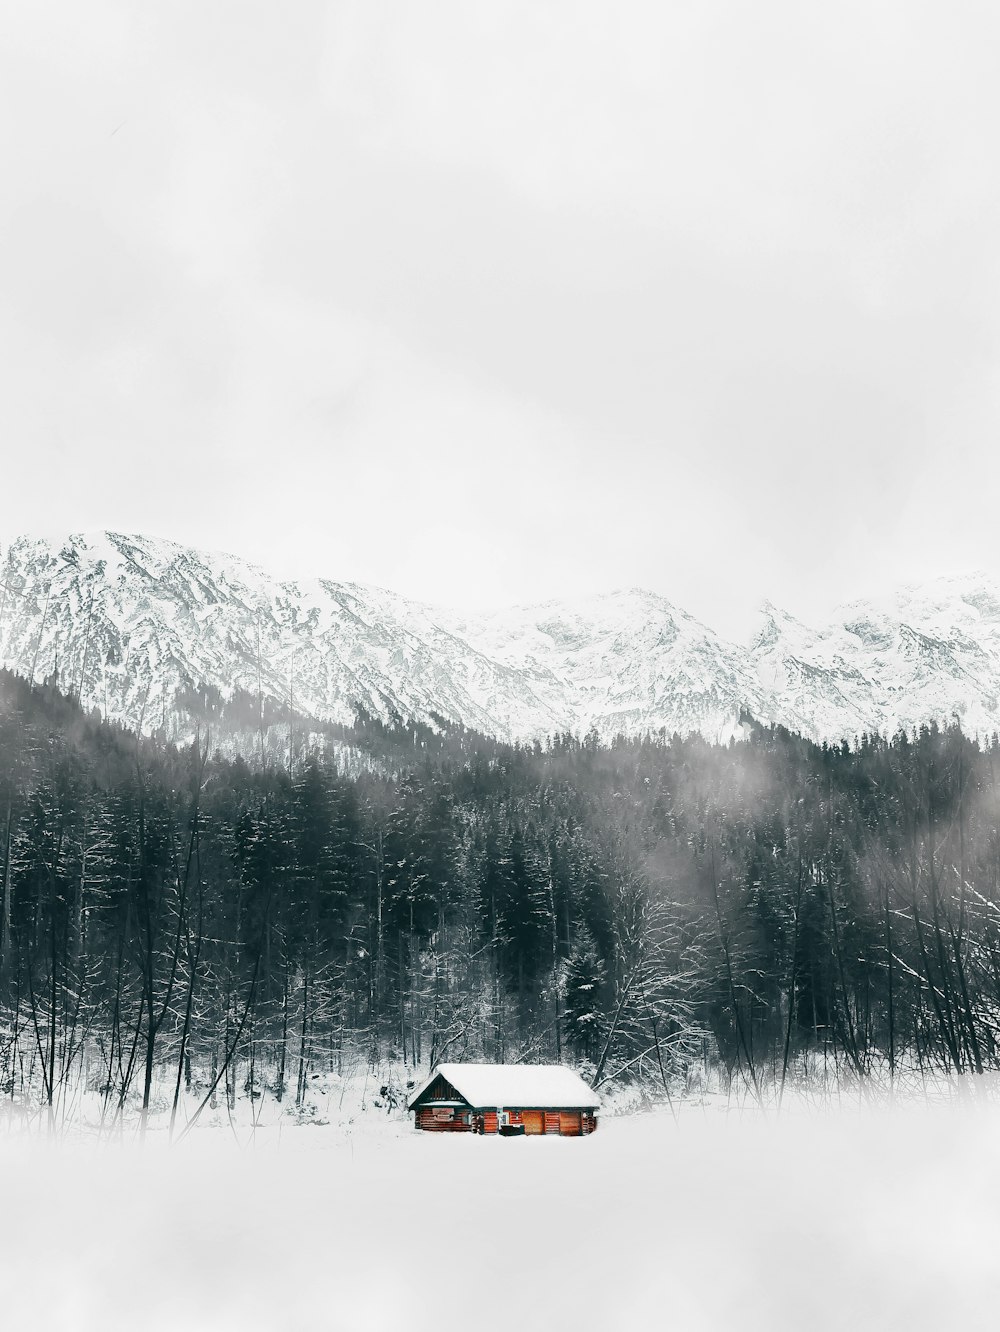 Braunes Haus in der Nähe von Bäumen und schneebedeckten Bergen tagsüber